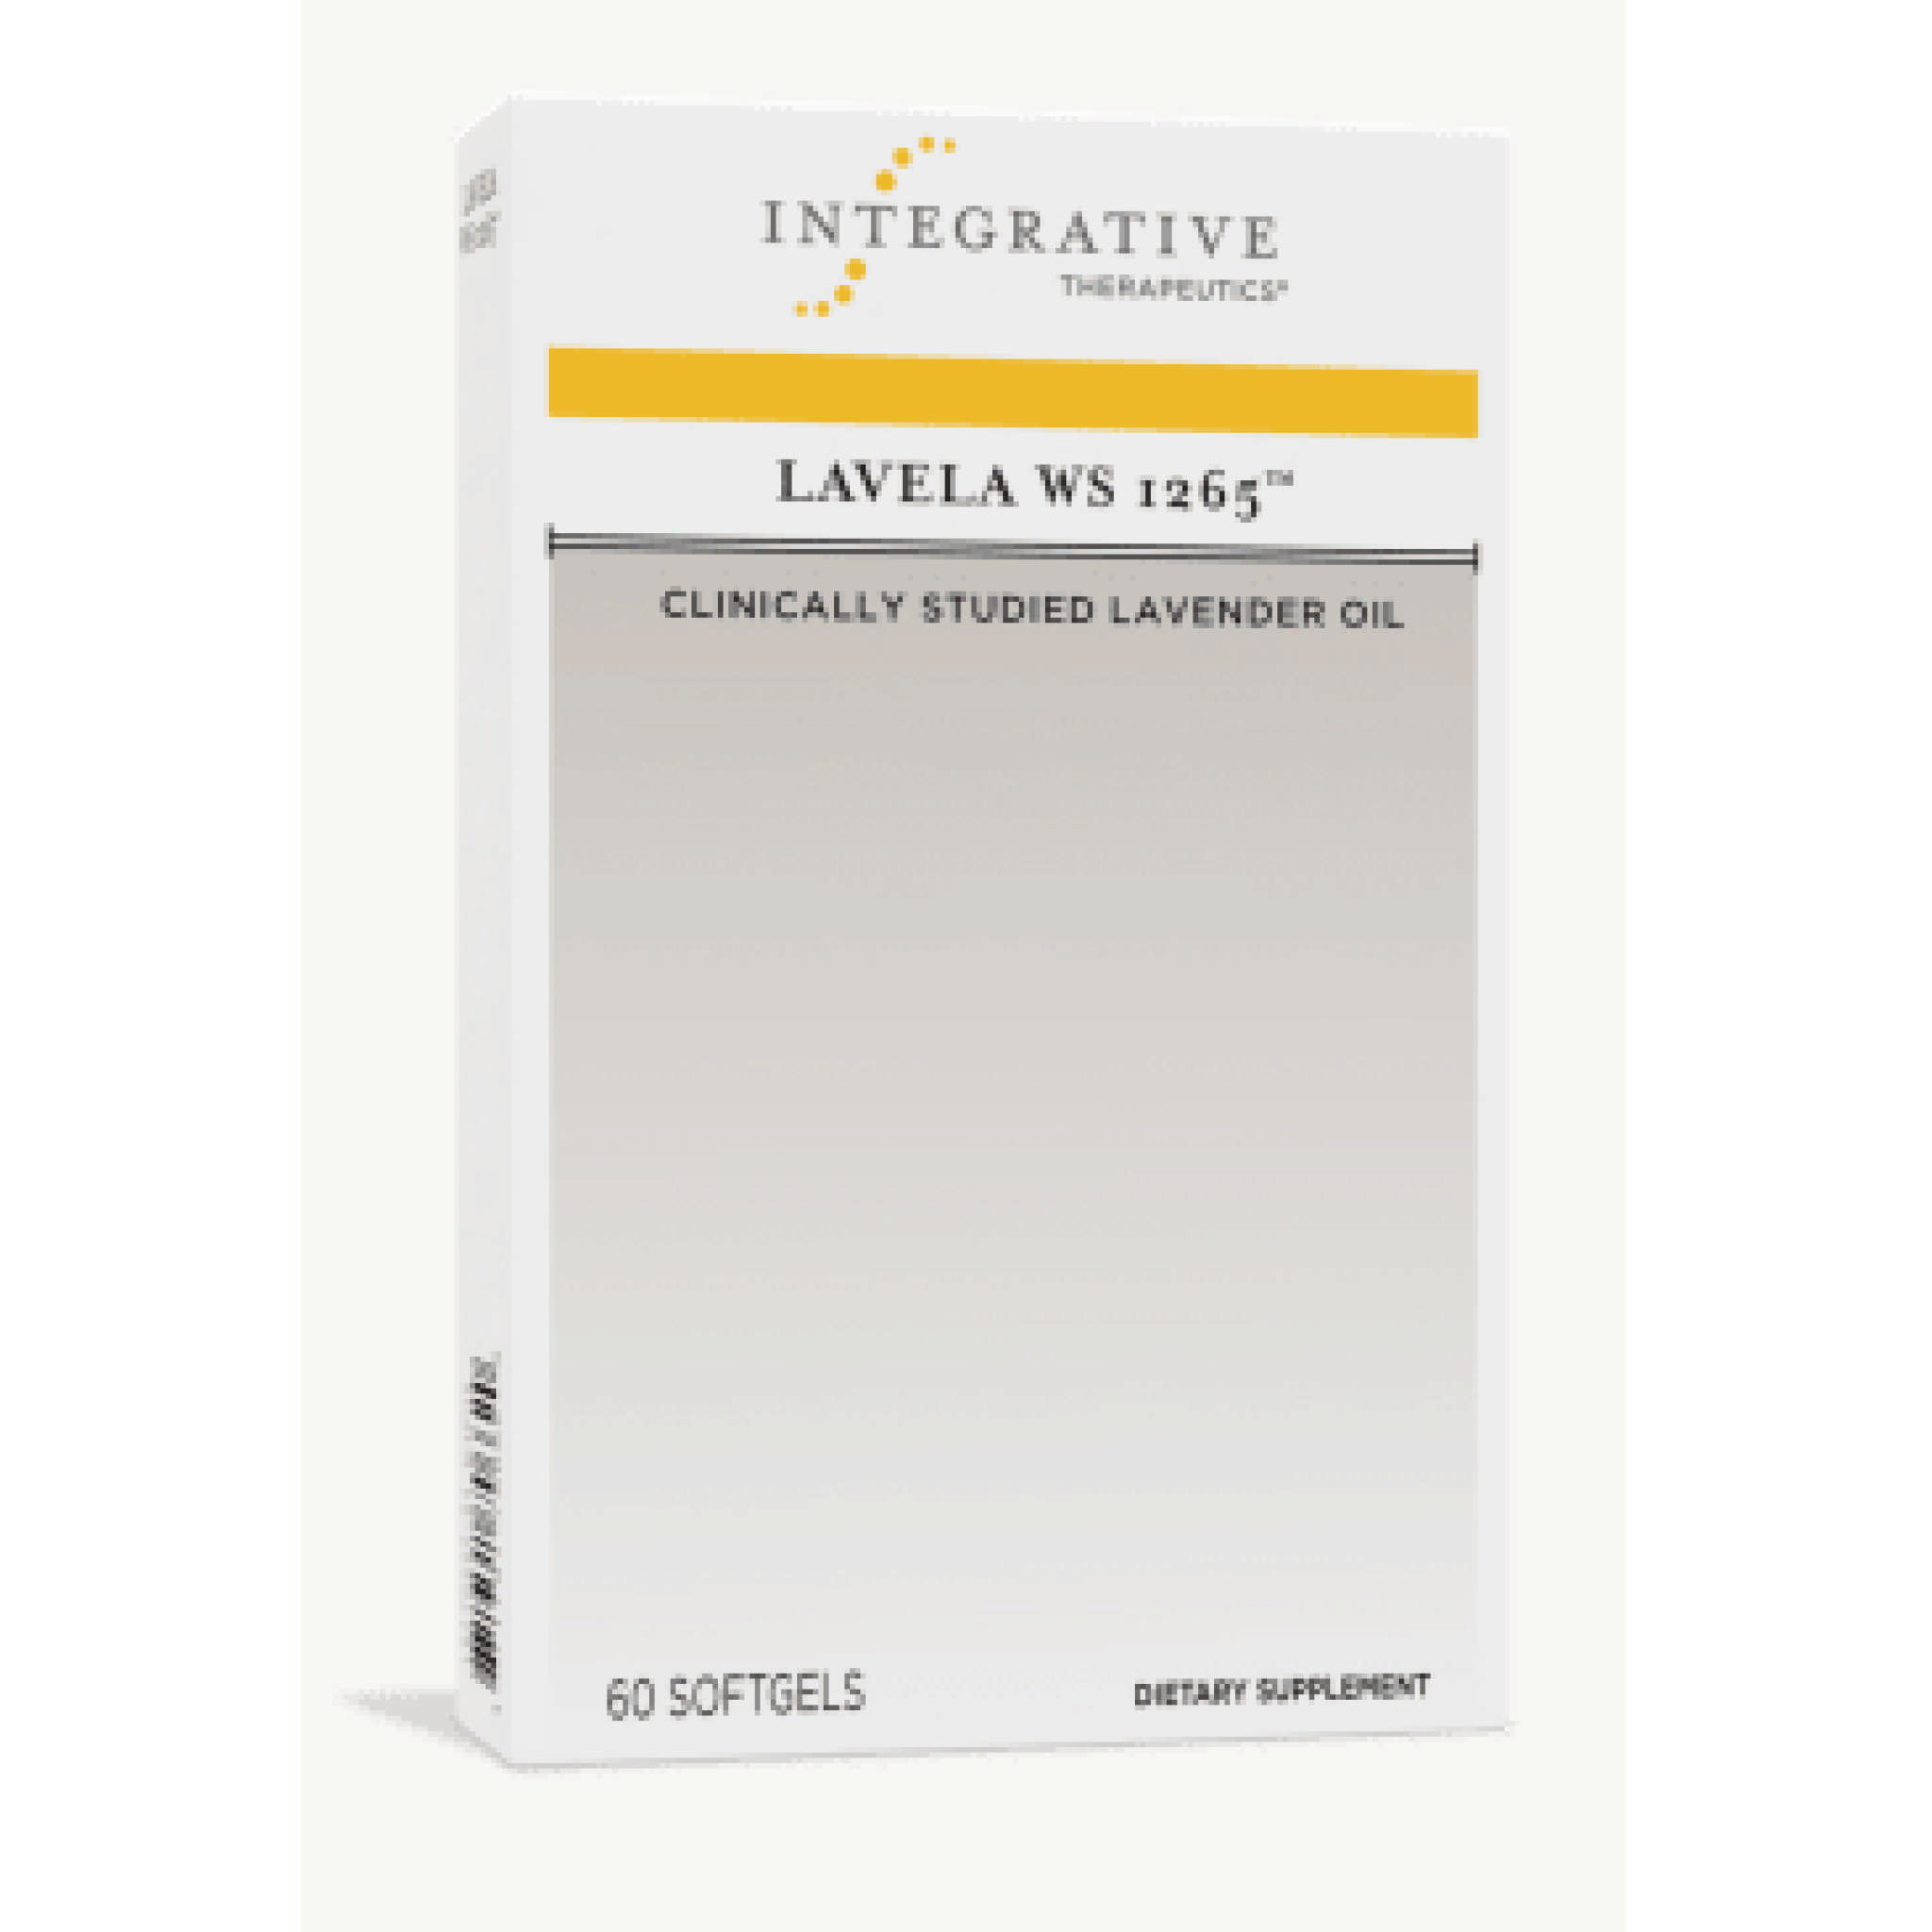 Integrative Therapy - Lavela Ws 1265